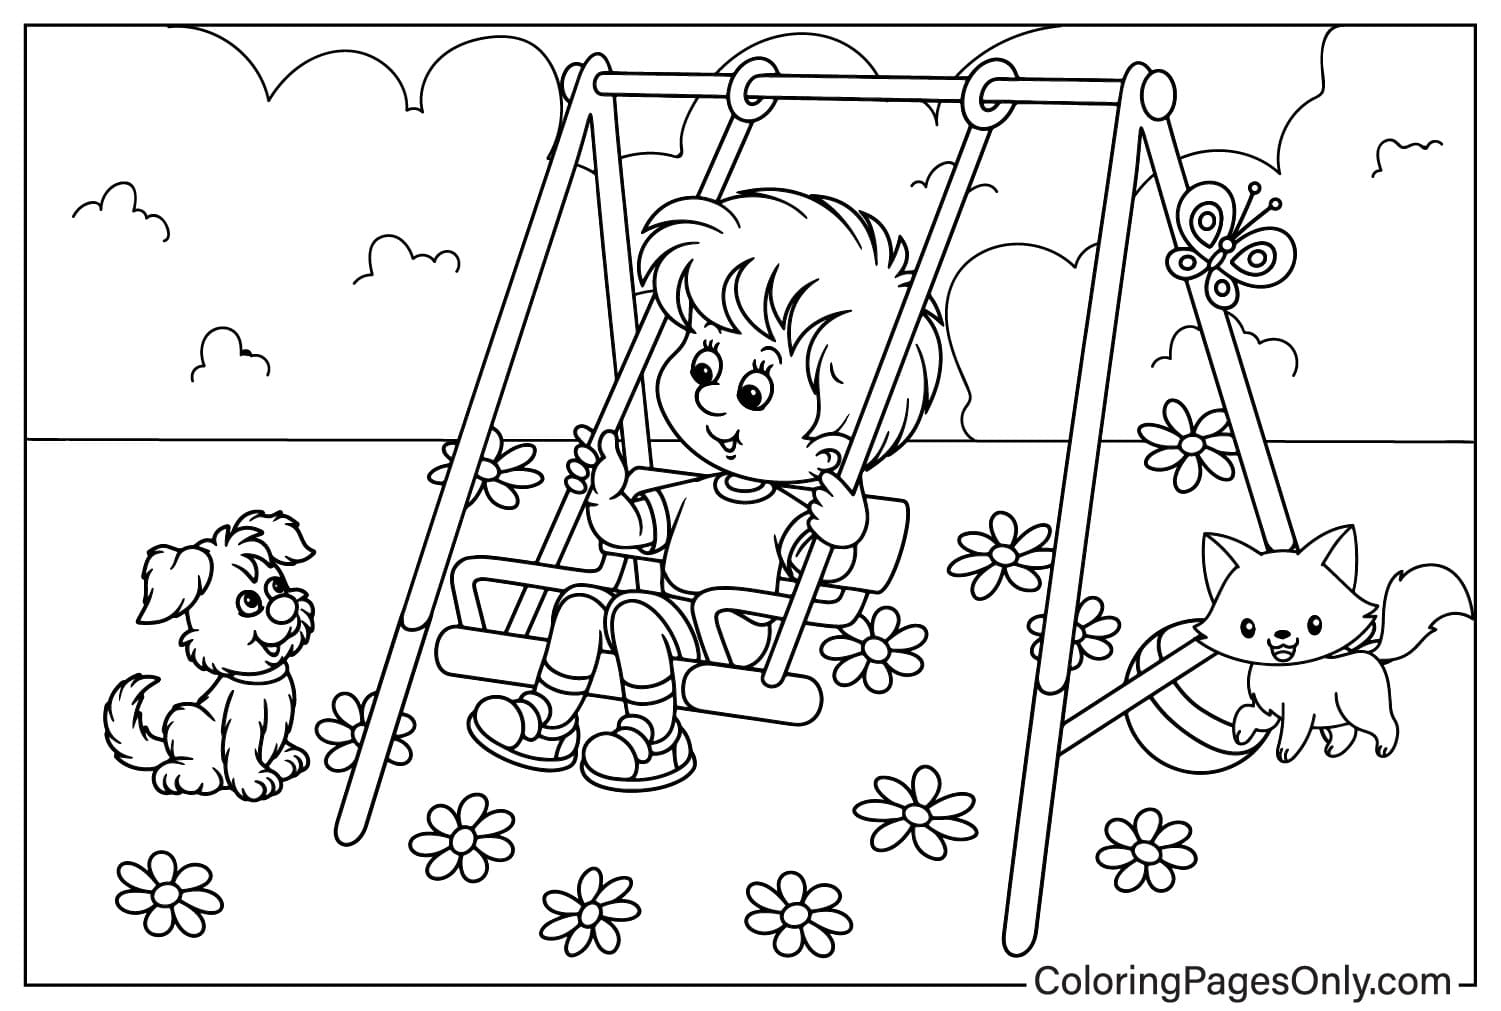 Imprimer la page à colorier de Playground